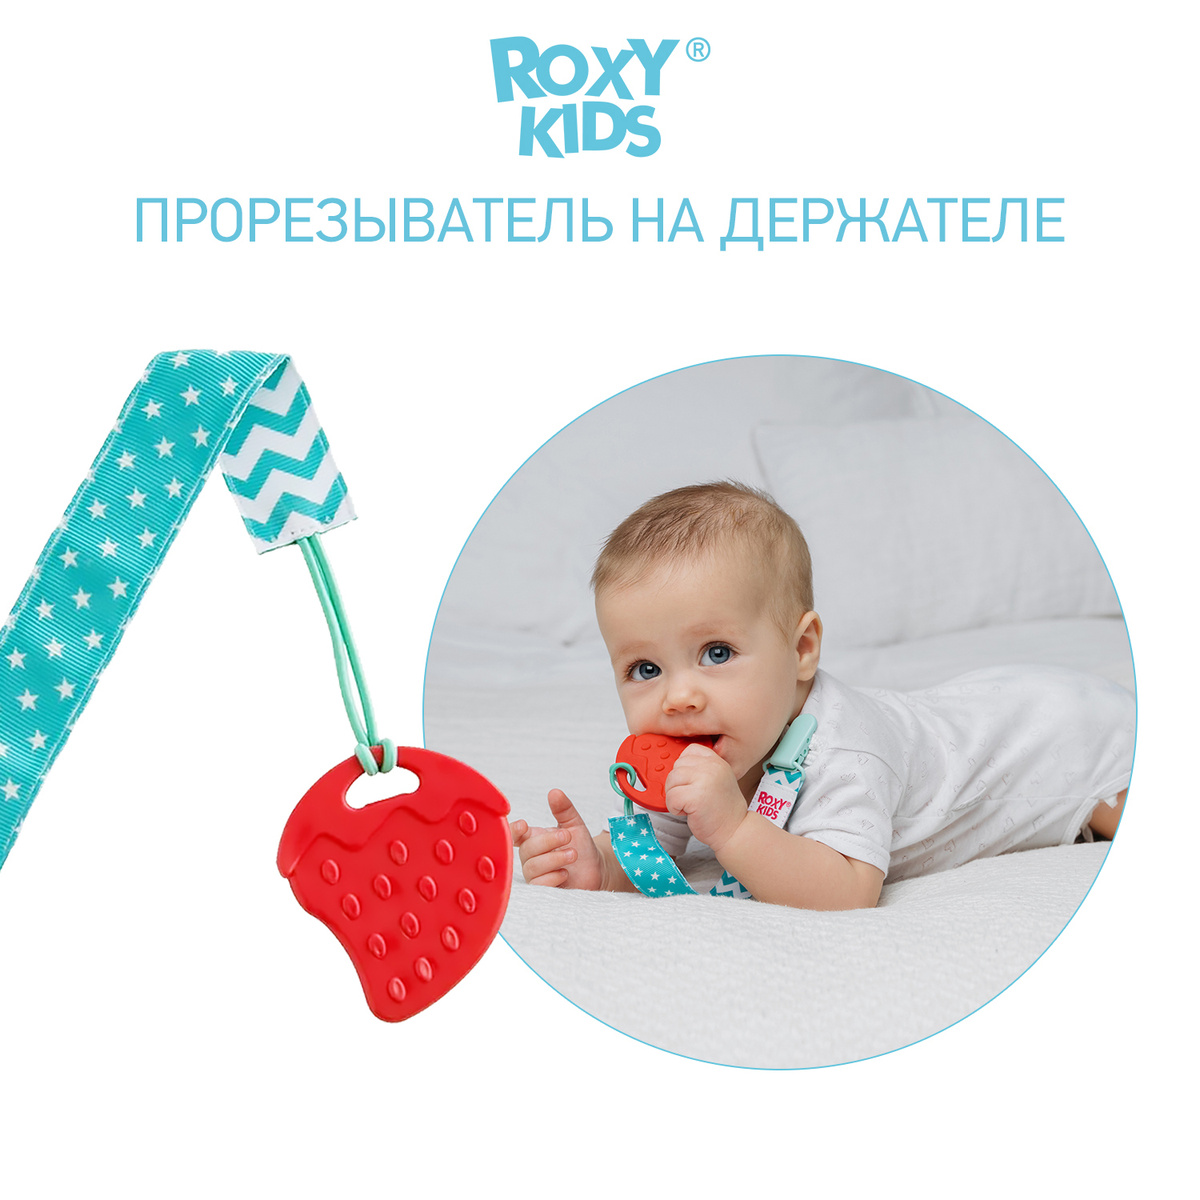 Прорезыватель для зубов / Грызунок прорезыватель / Игрушка для малыша на держателе ROXY-KIDS, цвет мятный #1